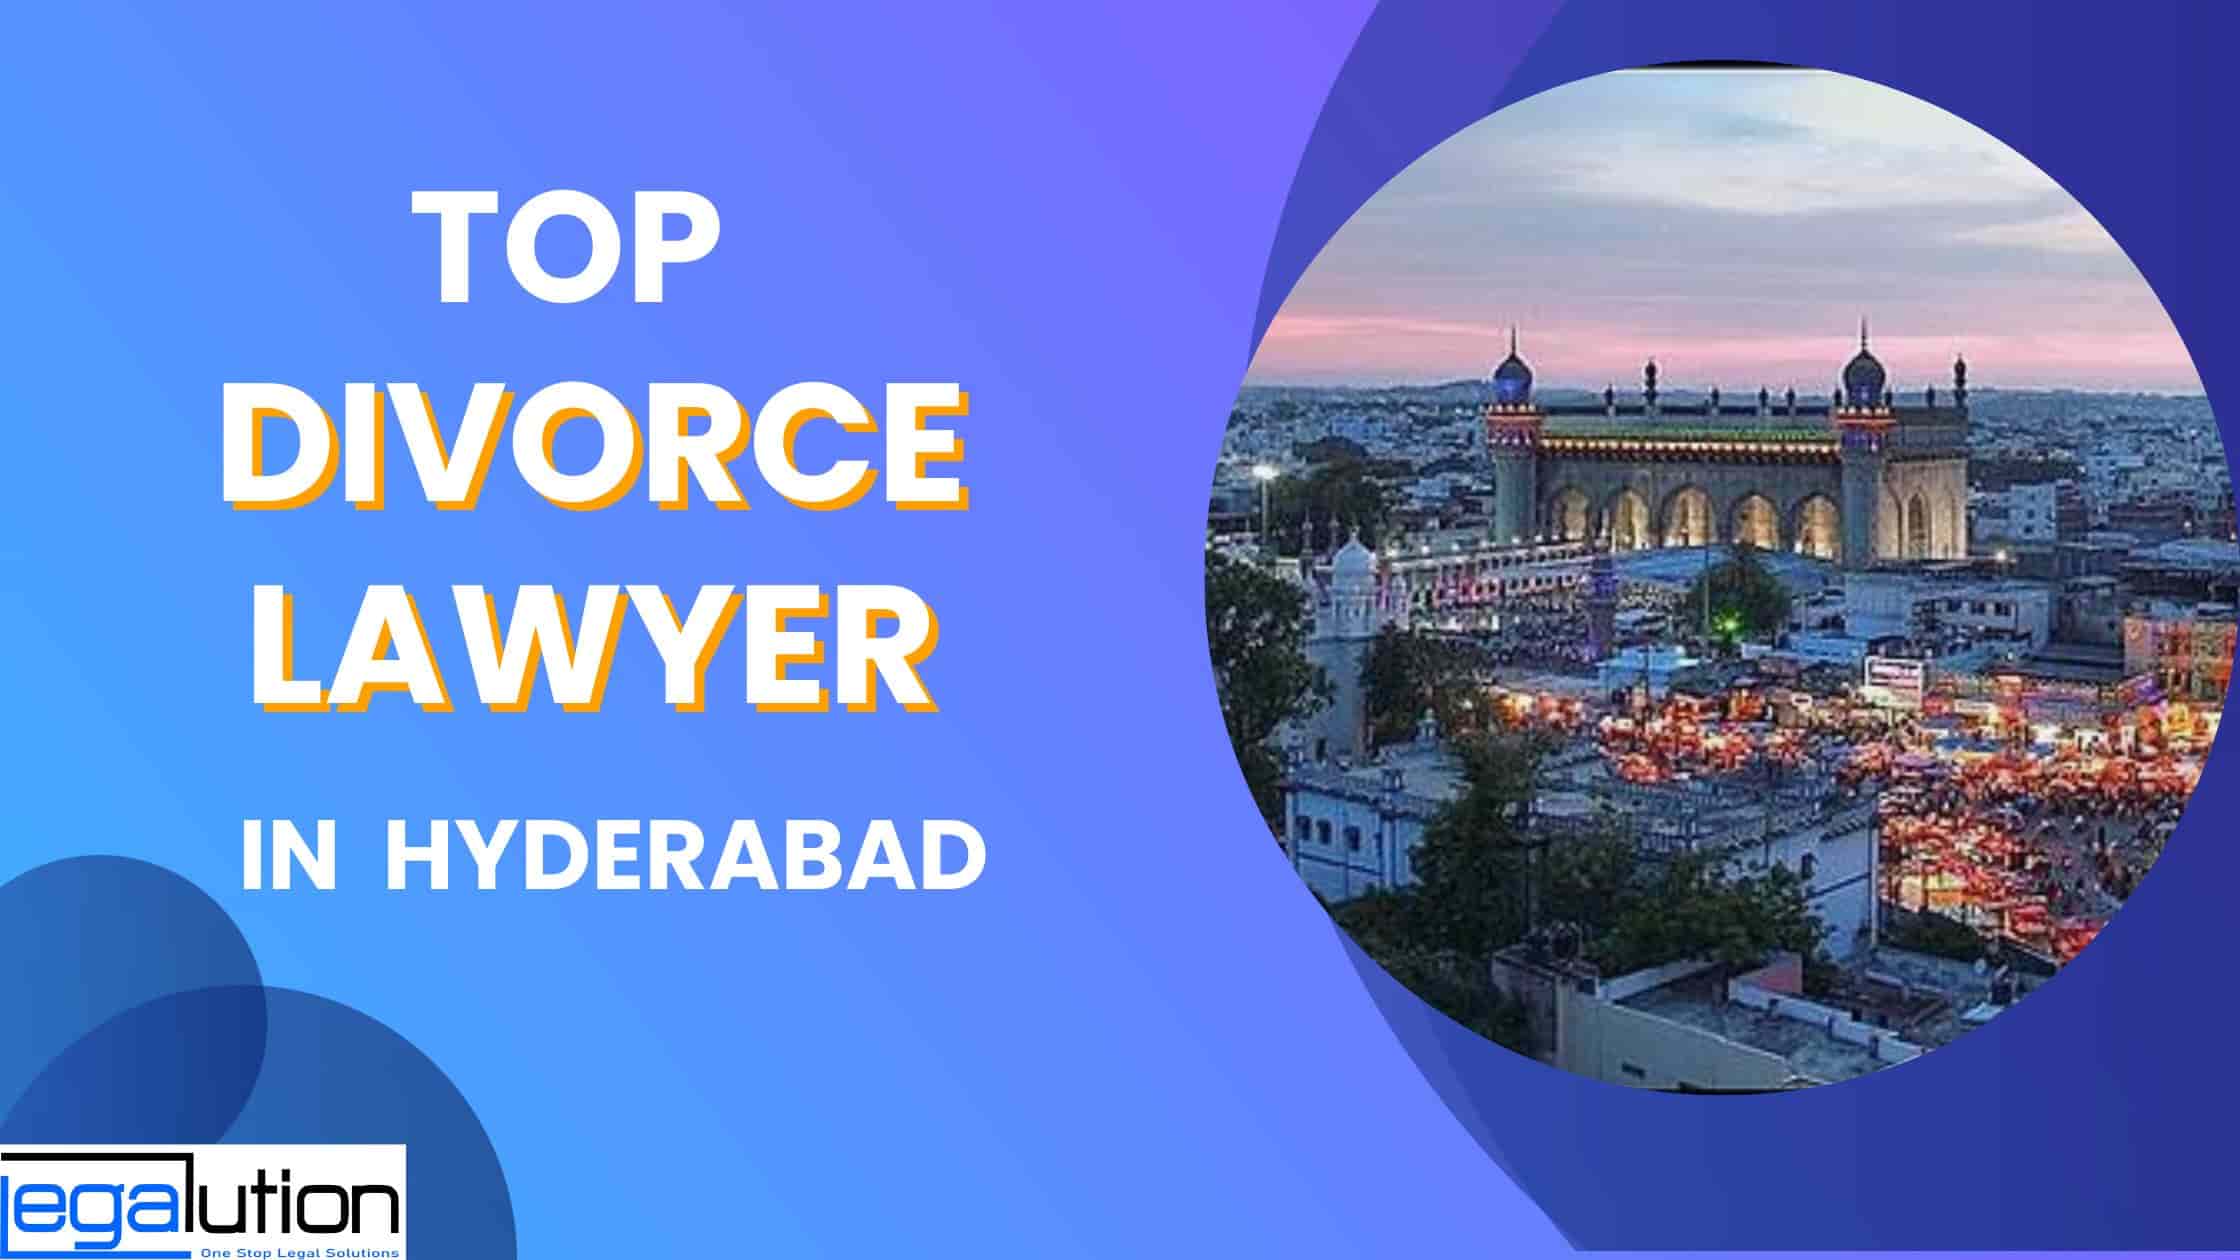 Top Divorce Lawyer in Hyderabad